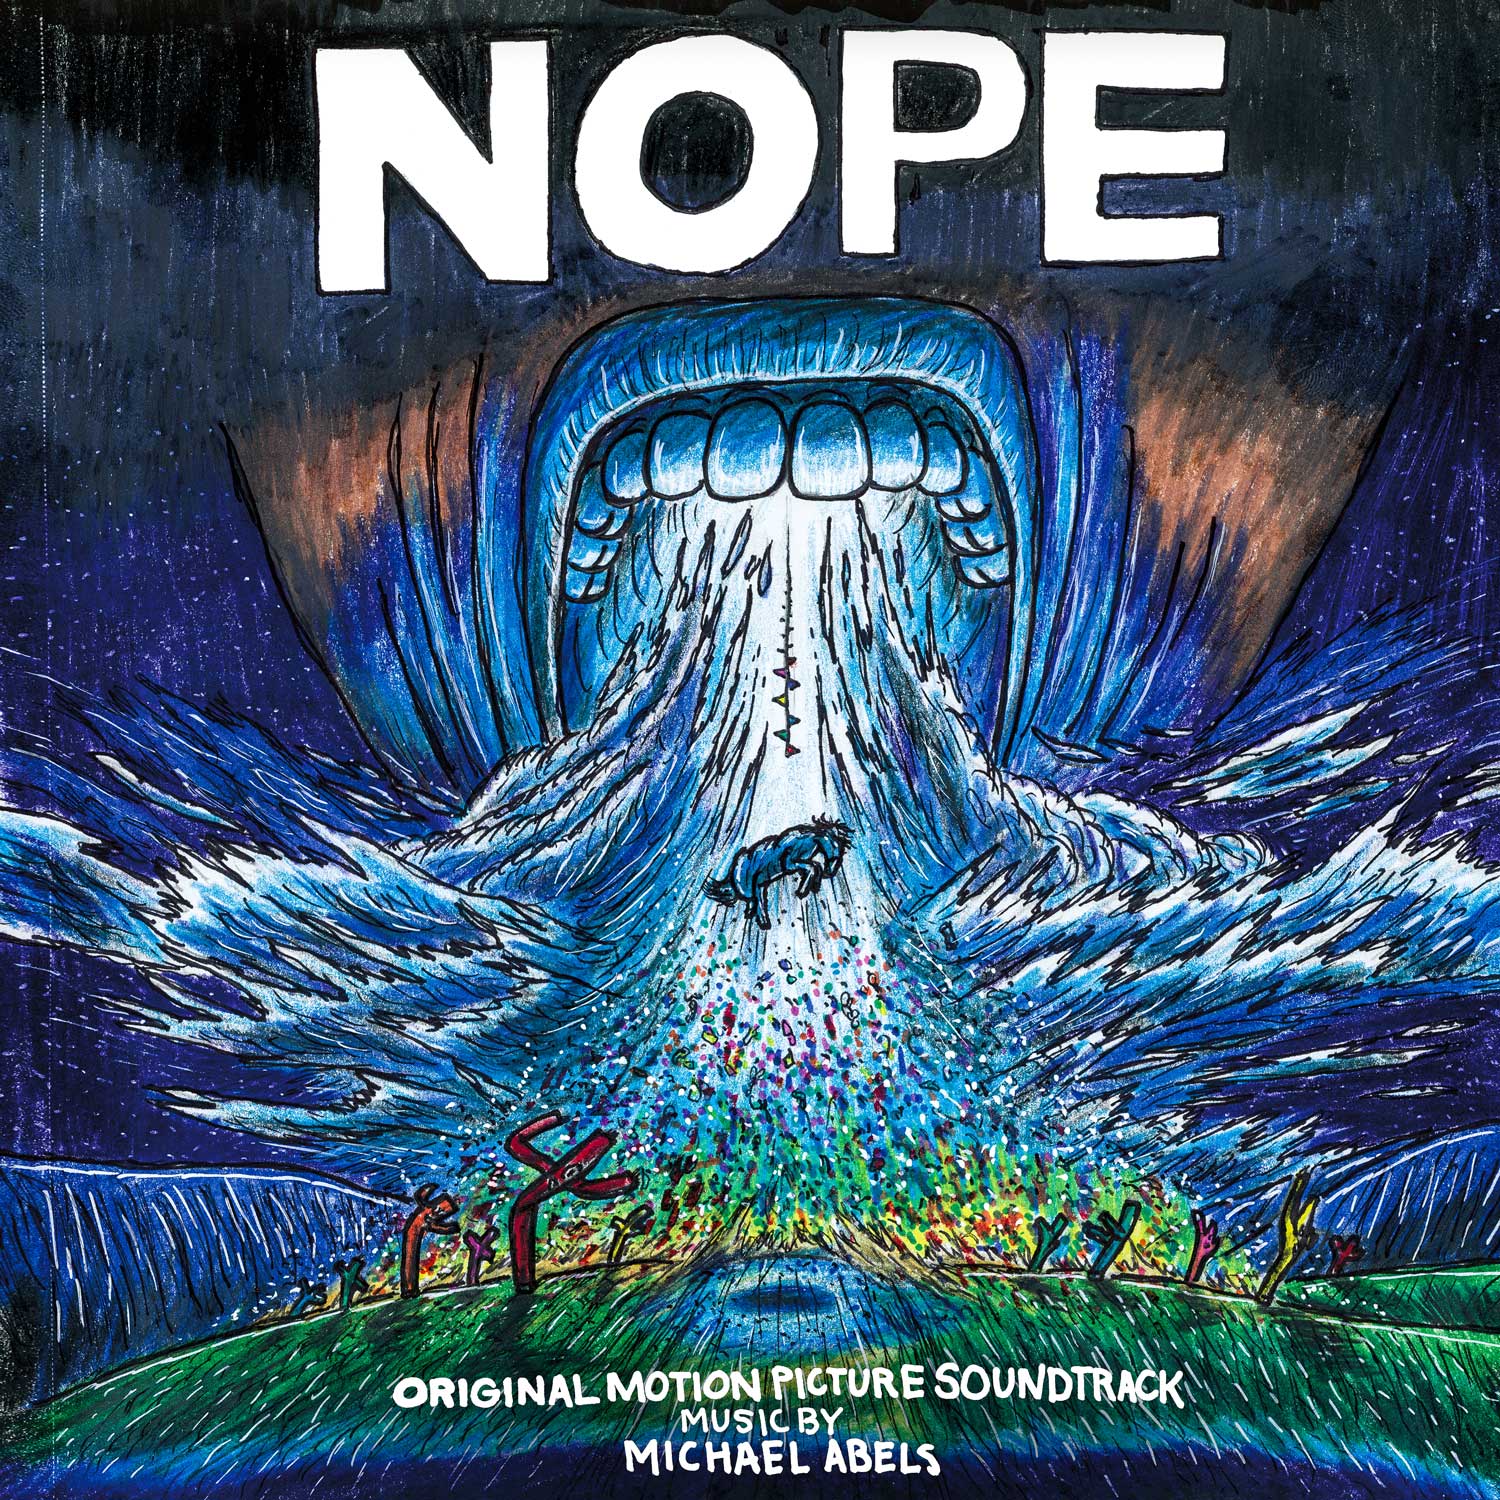 Nope (Original Motion Picture Soundtrack) - Michael Abels | Helix Sounds